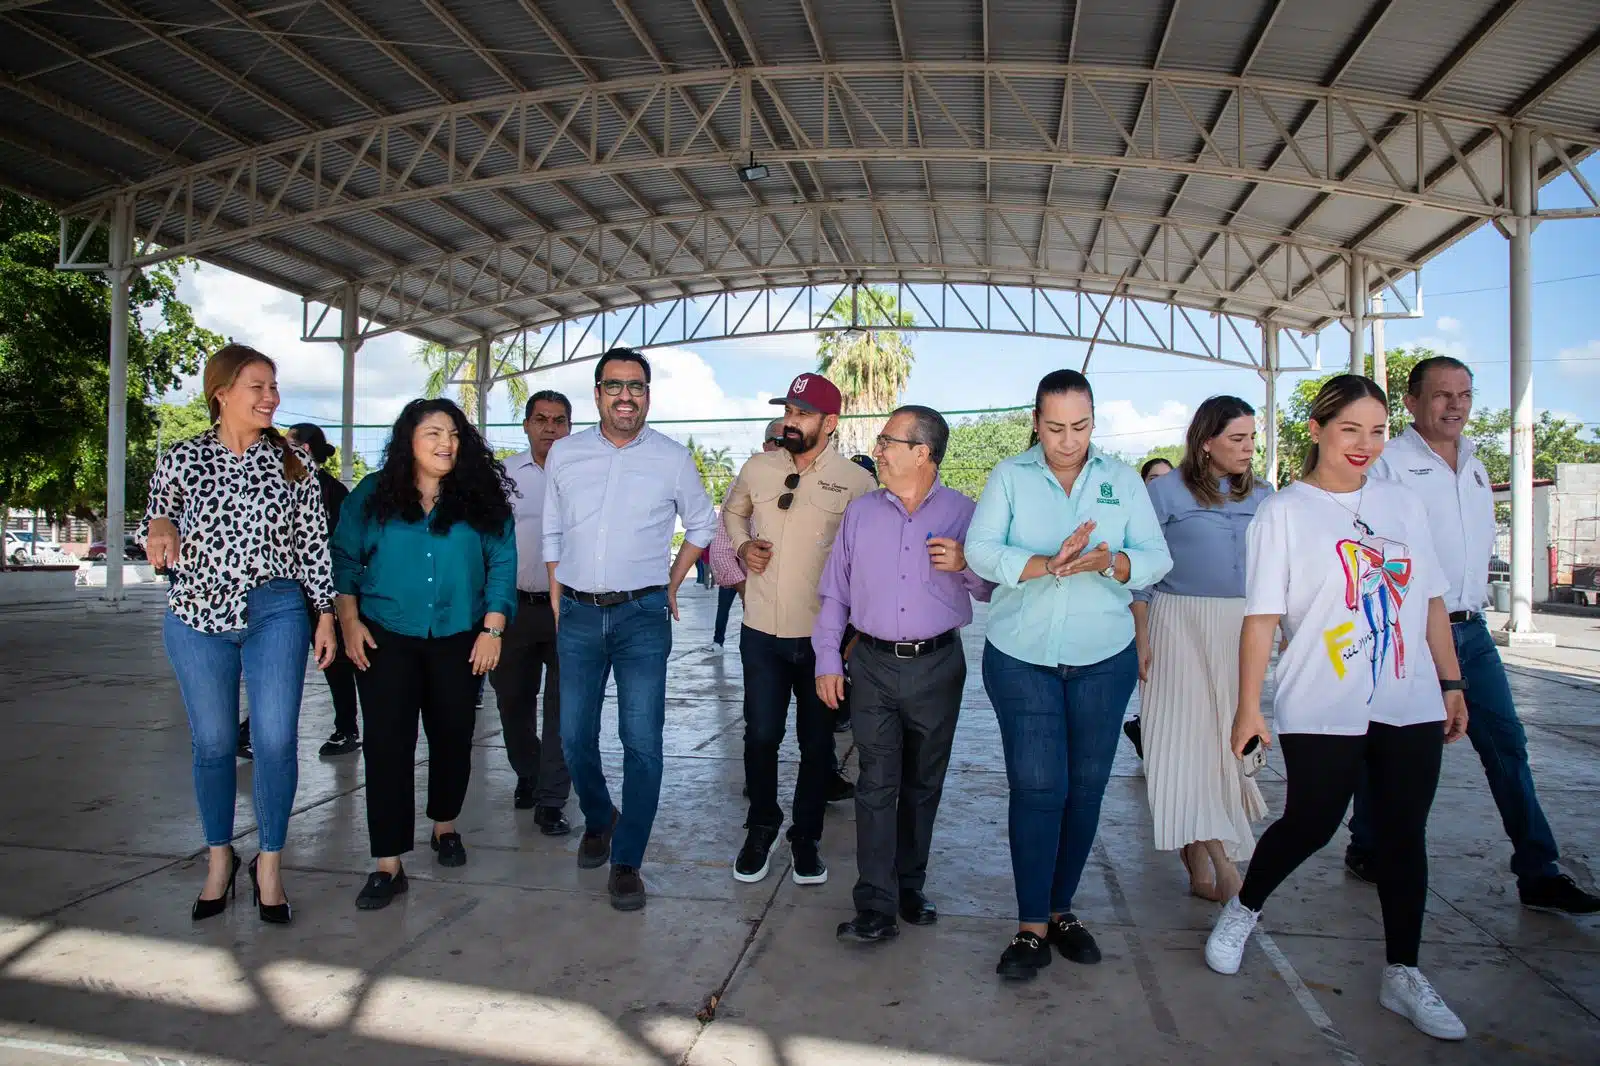 Alcalde de Culiacán Juan de Dios Gámez Mendívil, acompañado de funcionarios y ciudadanos